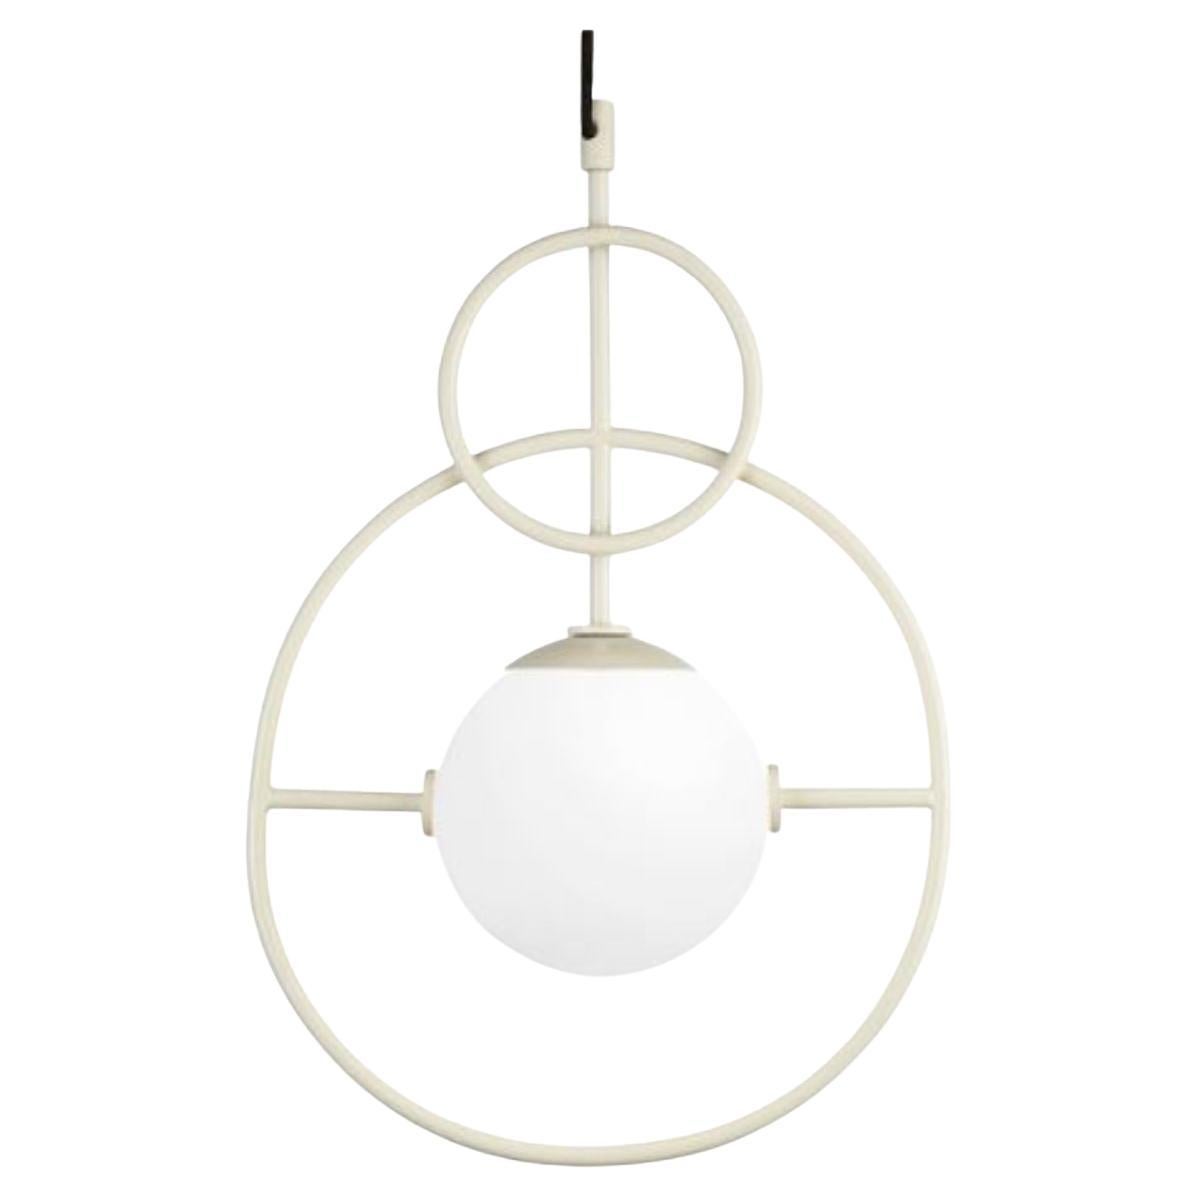 Ivory Loop II Suspension Lamp by Dooq